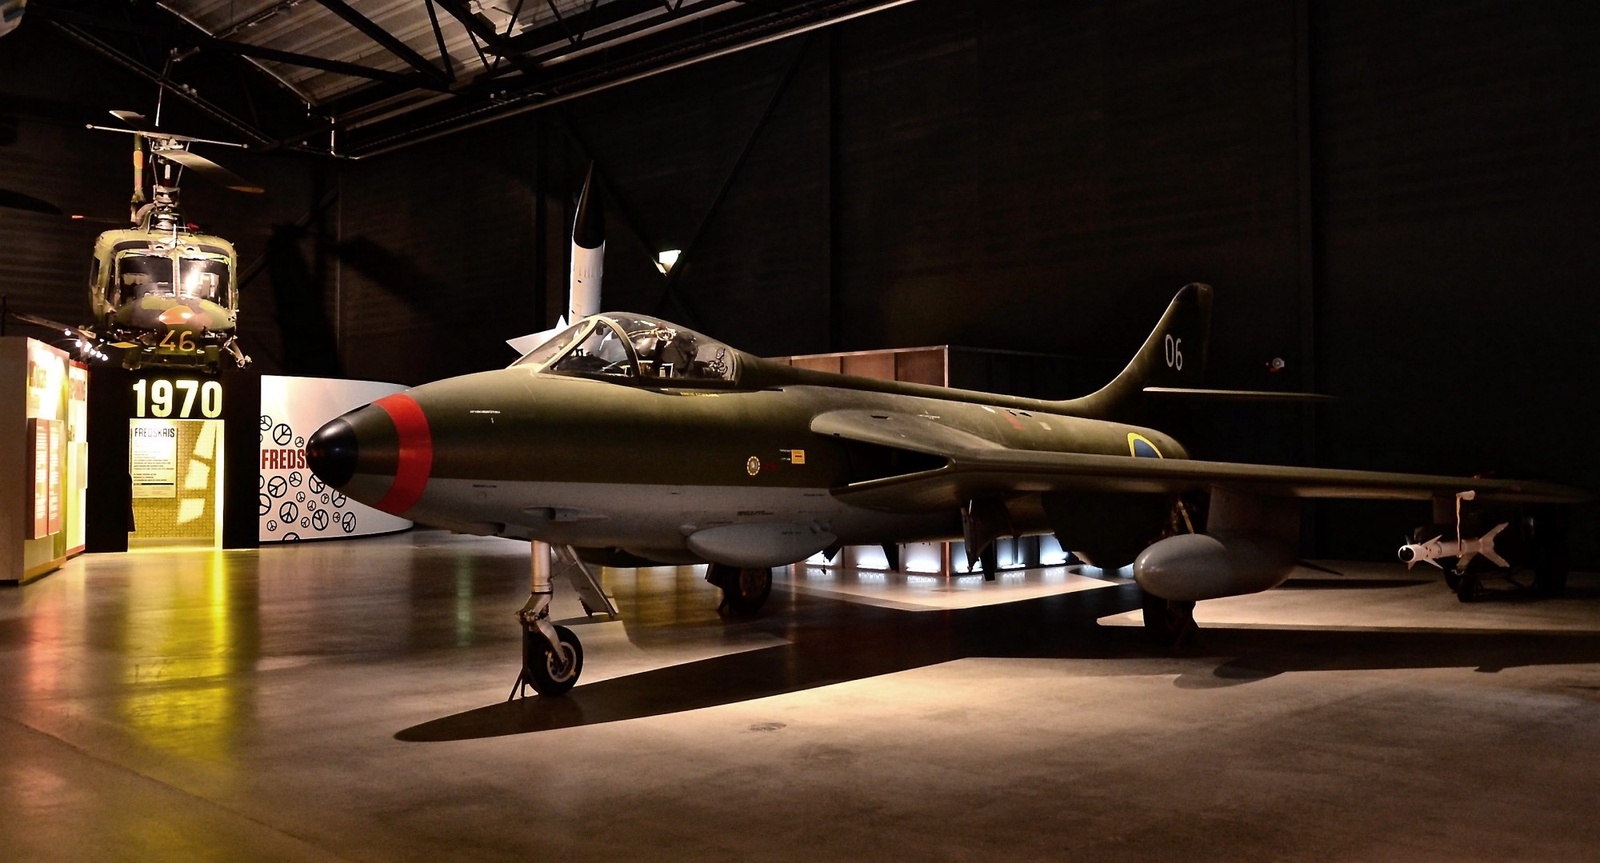 Hawker Hunter var ett enmotorigt brittiskt jaktflygplan som utvecklades i slutet av 1940-talet. Under 50-talet köpte Flygvapnet 120 Hawker Hunter som fick beteckningen J 34.